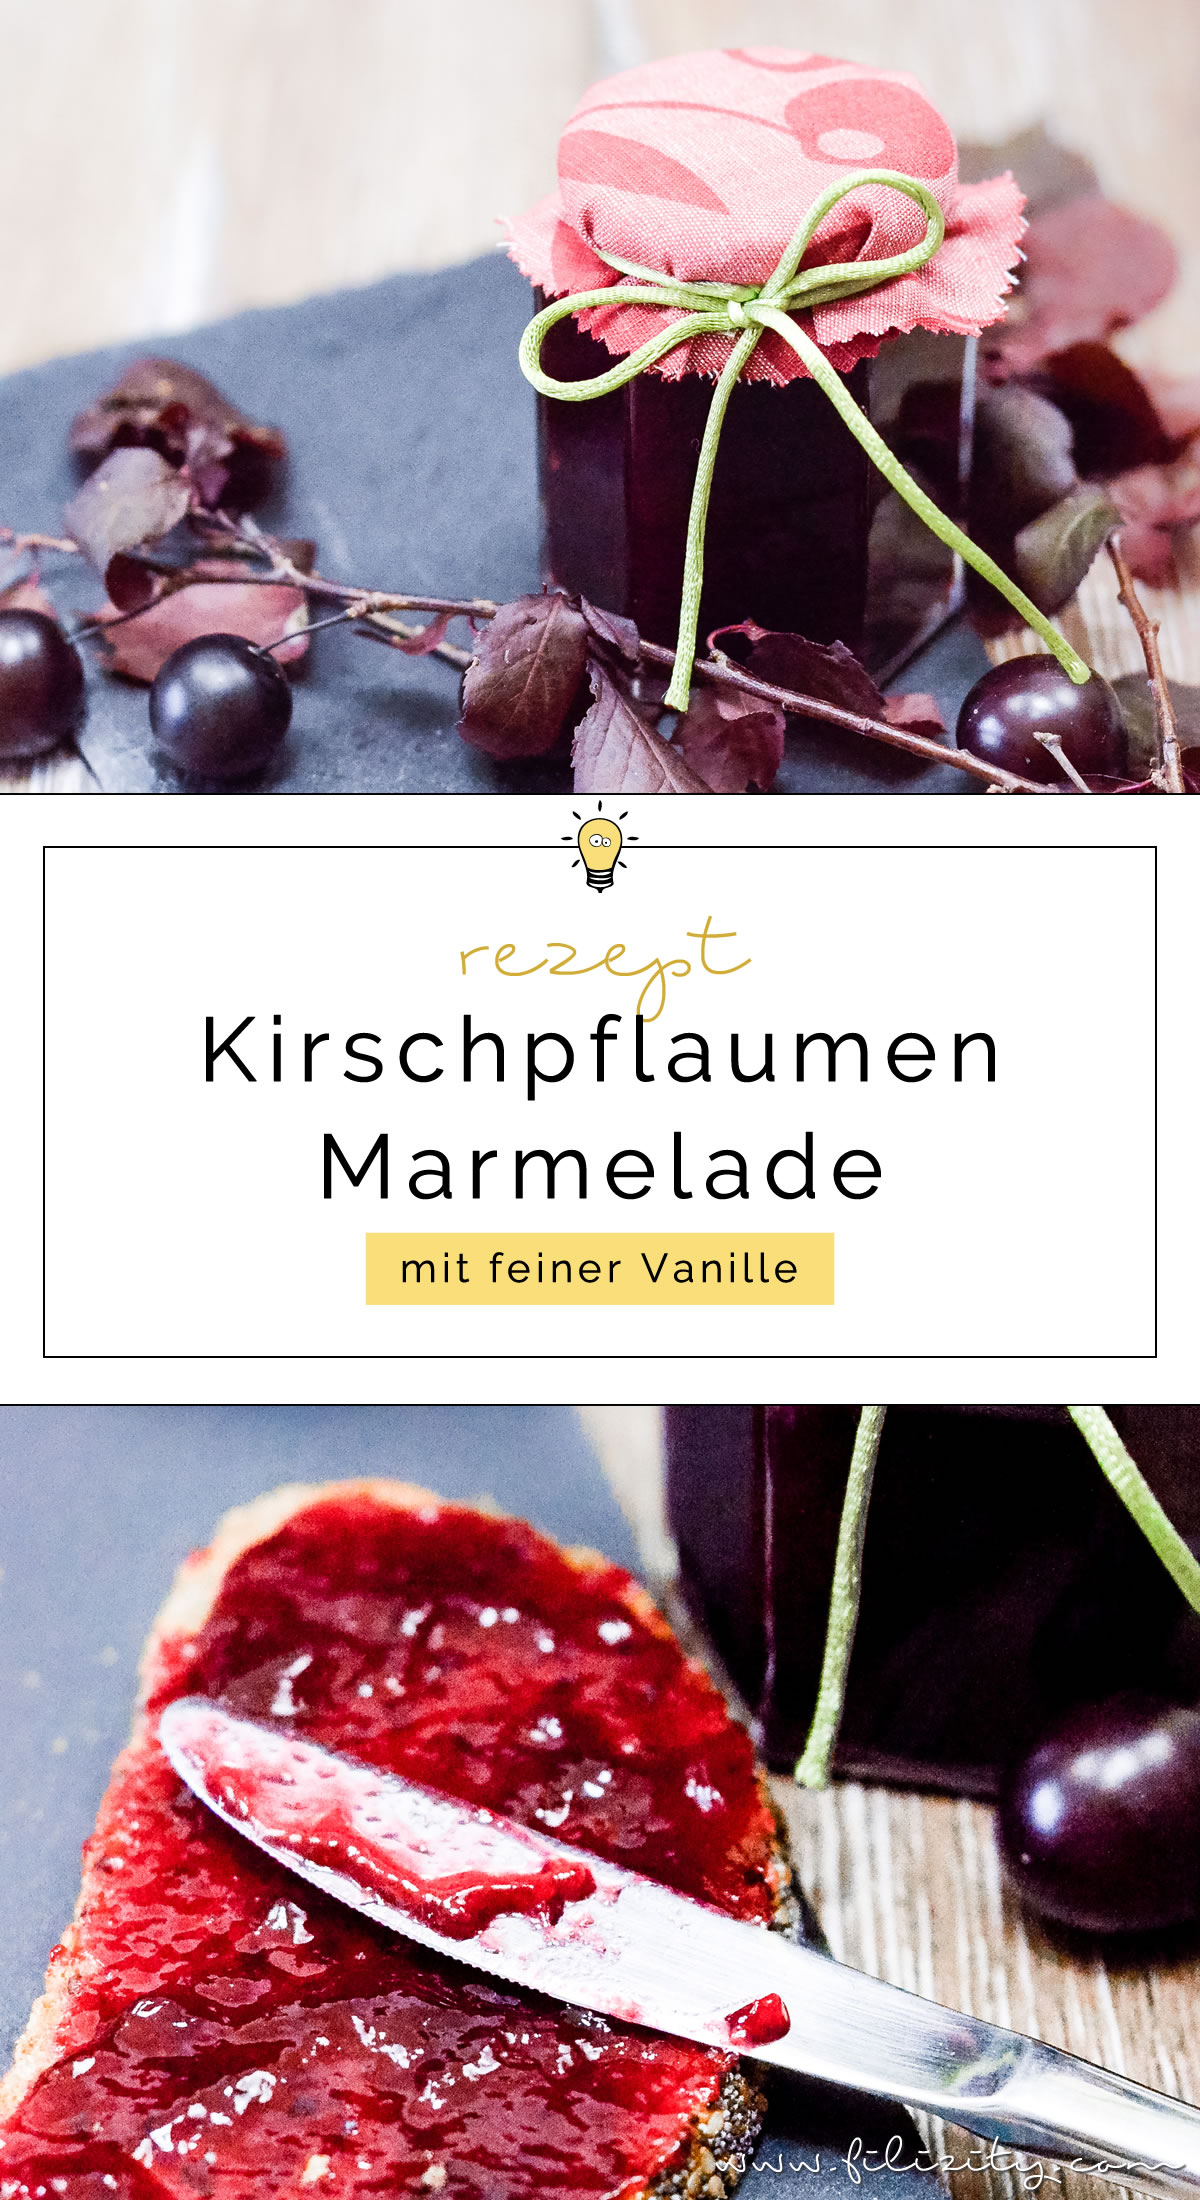 Ein leckeres Frühstücks-Rezept: Kirschpflaumen-Marmelade mit Vanille selber machen | Filizity.com | Food-Blog aus dem Rheinland #sommer #herbst #frühstück #marmelade